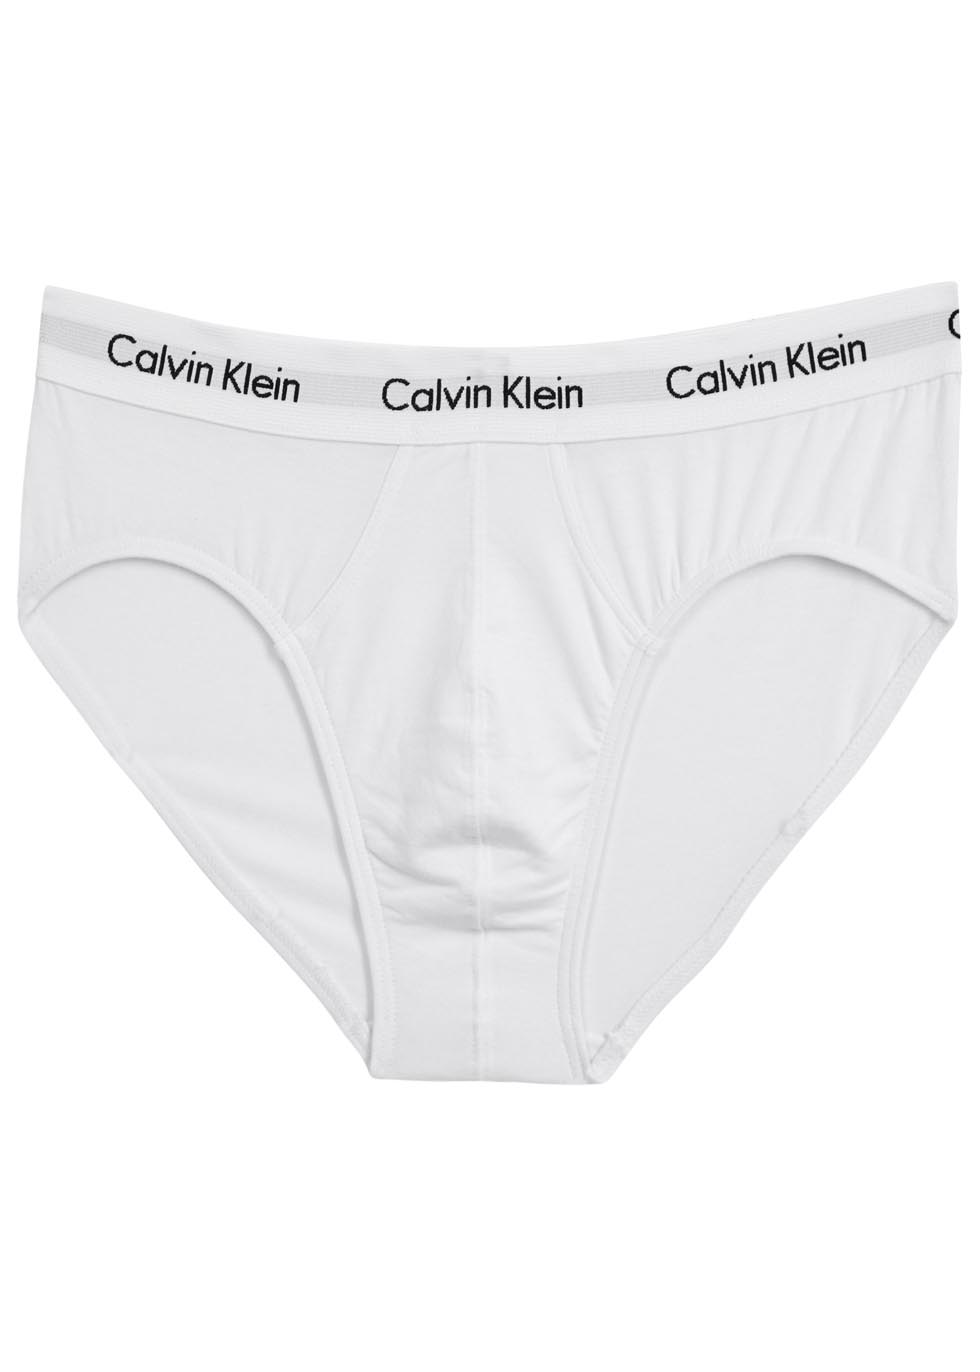 Calvin Klein White stretch cotton briefs - set of three - Harvey Nichols